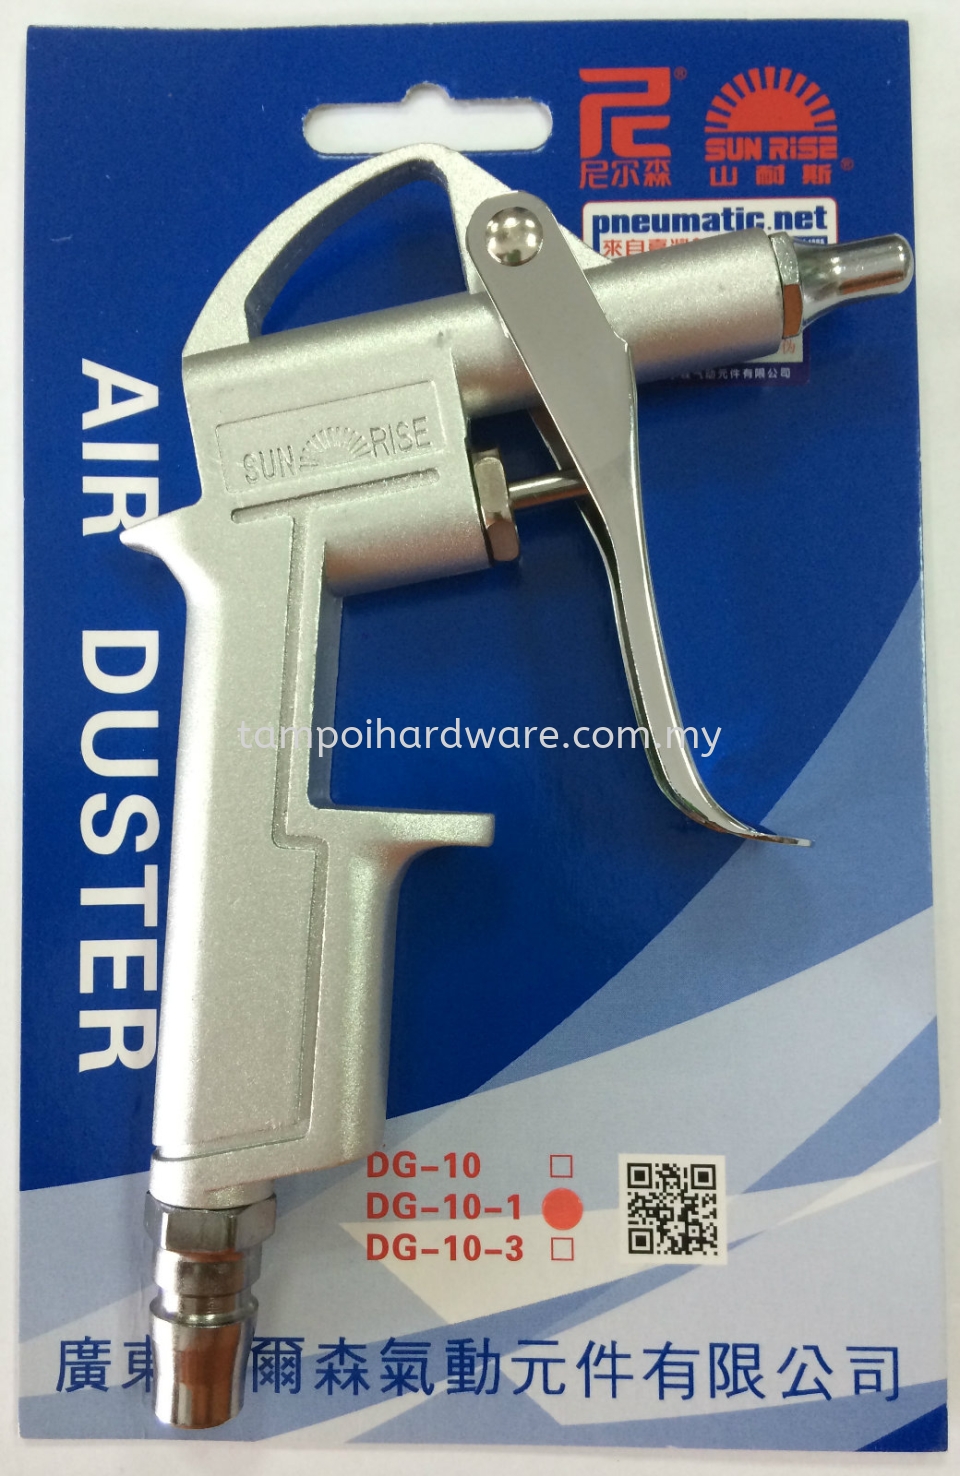 Sunrise TWN Aluminium Air Duster DG-10-1 Air Duster Pneumatic Tools